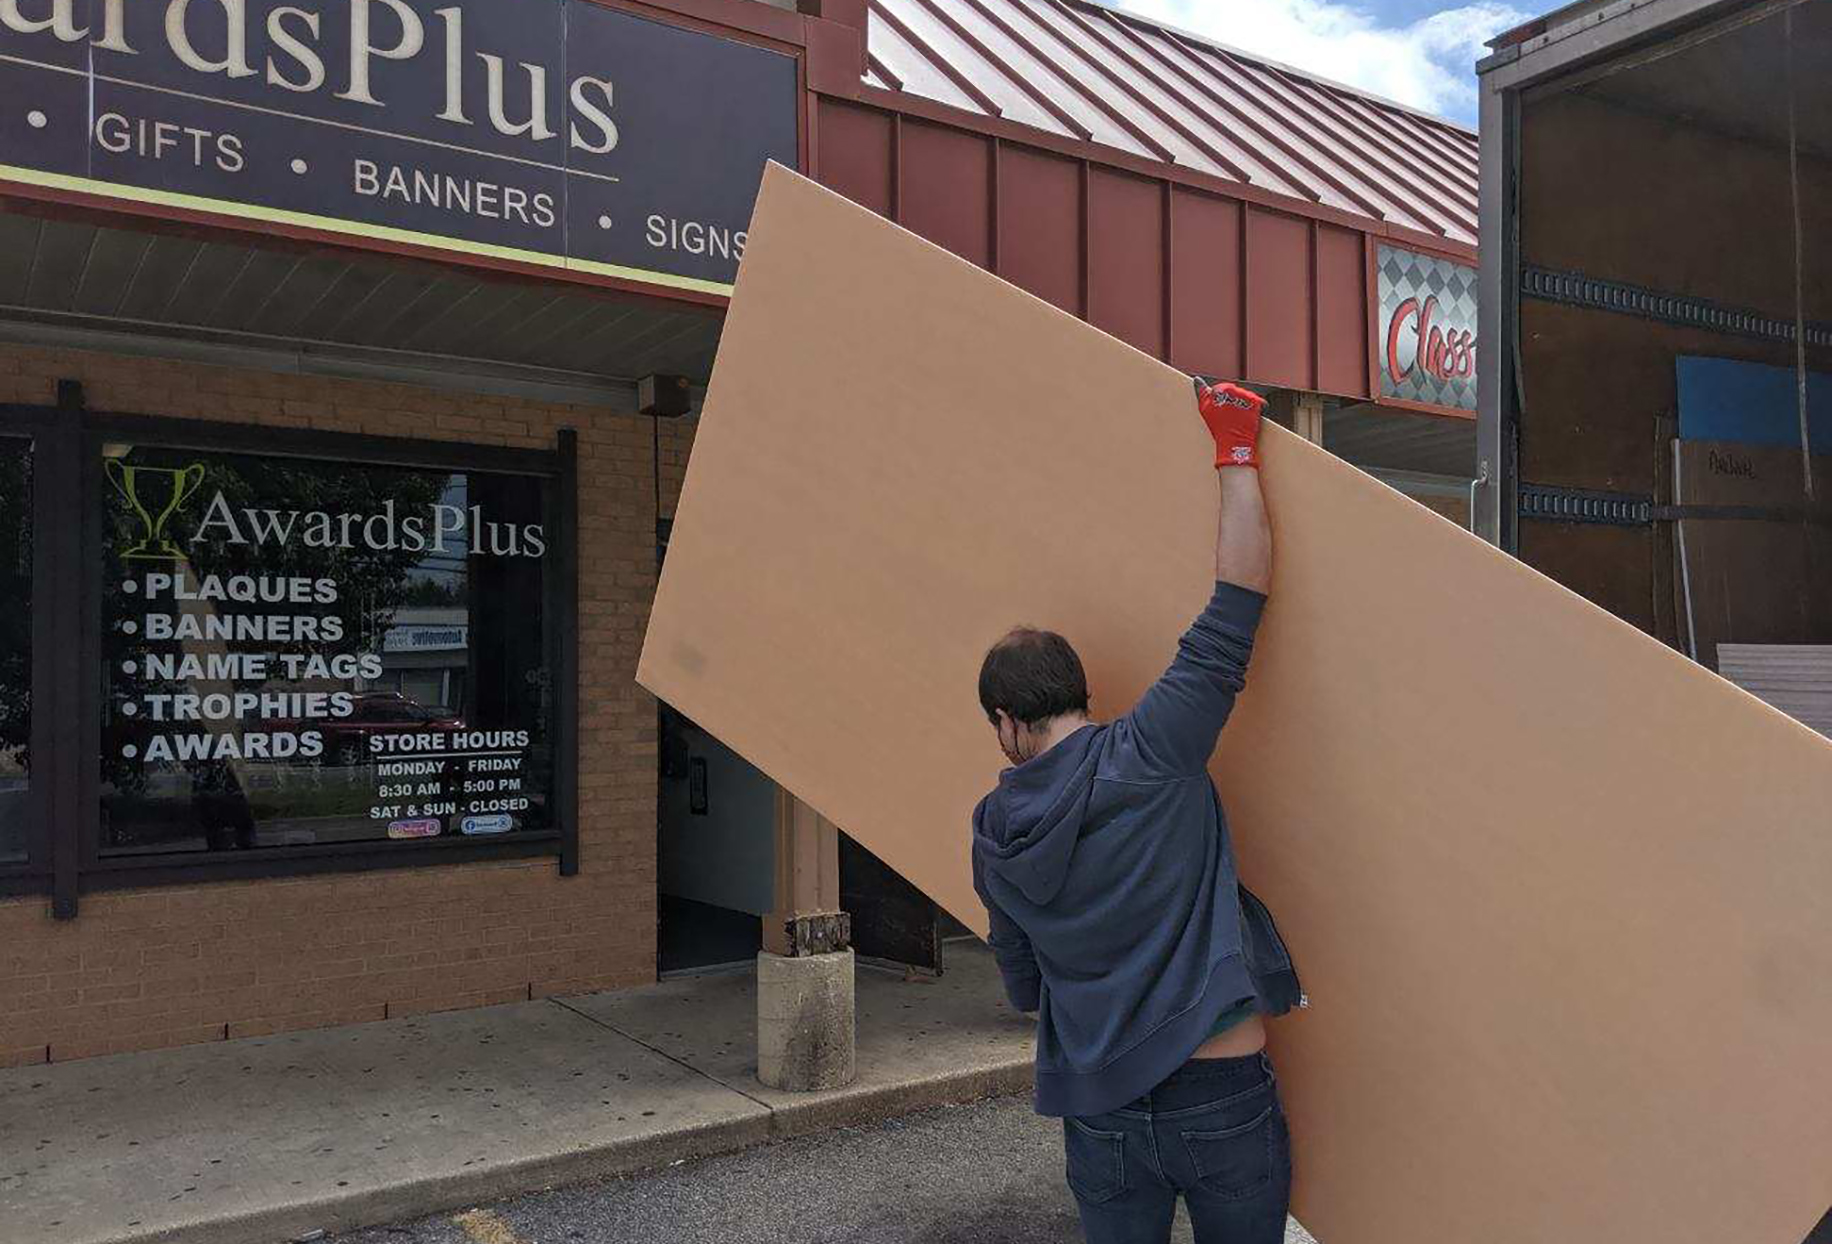 Man carries large acrylic sheet towards building